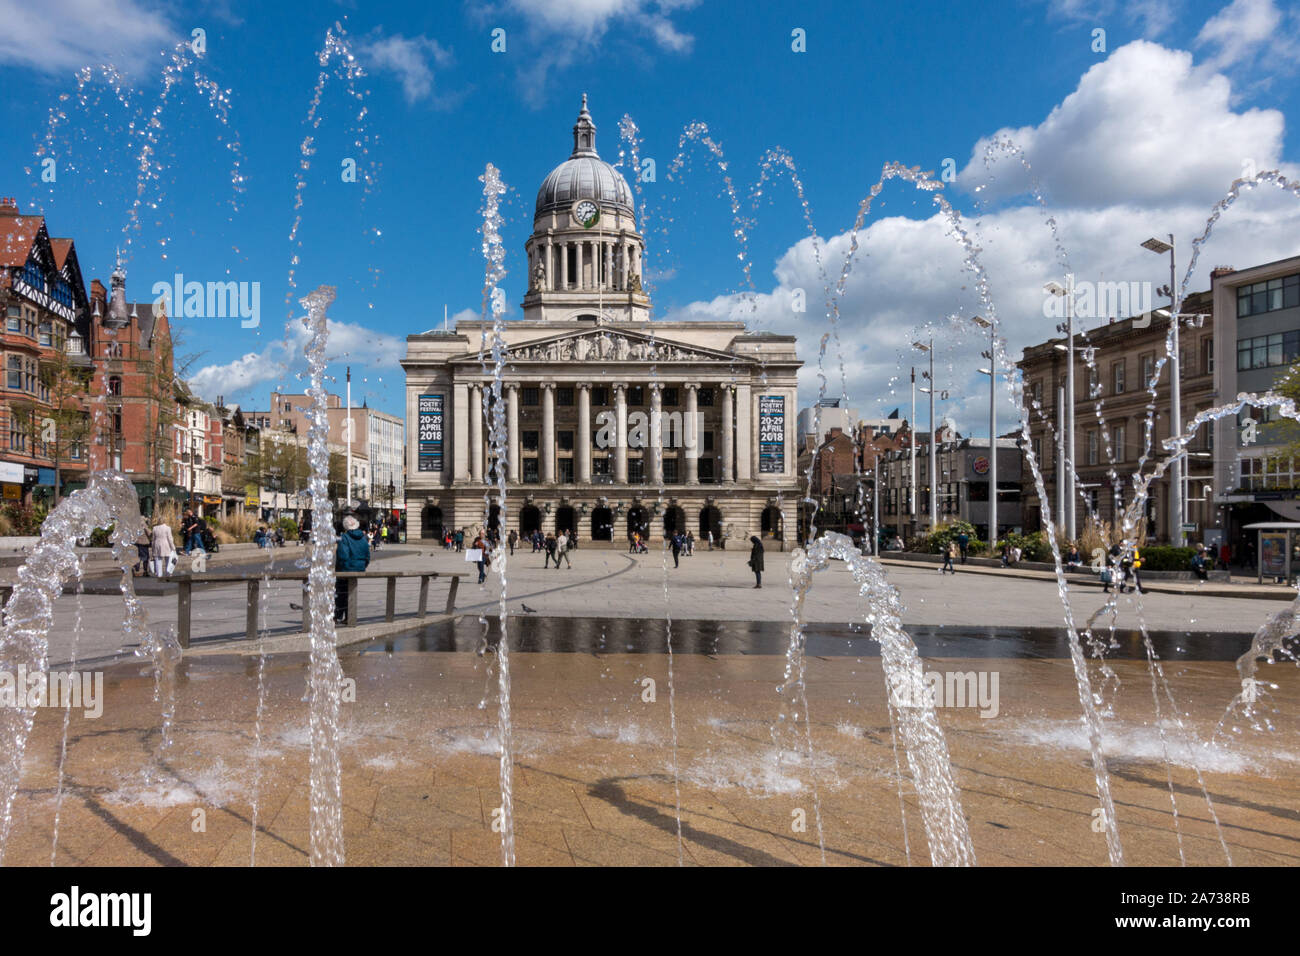 Wasserspiel in Alten Marktplatz mit Nottingham Rat Haus Gebäude im Hintergrund, Nottingham, England, UK. Stockfoto